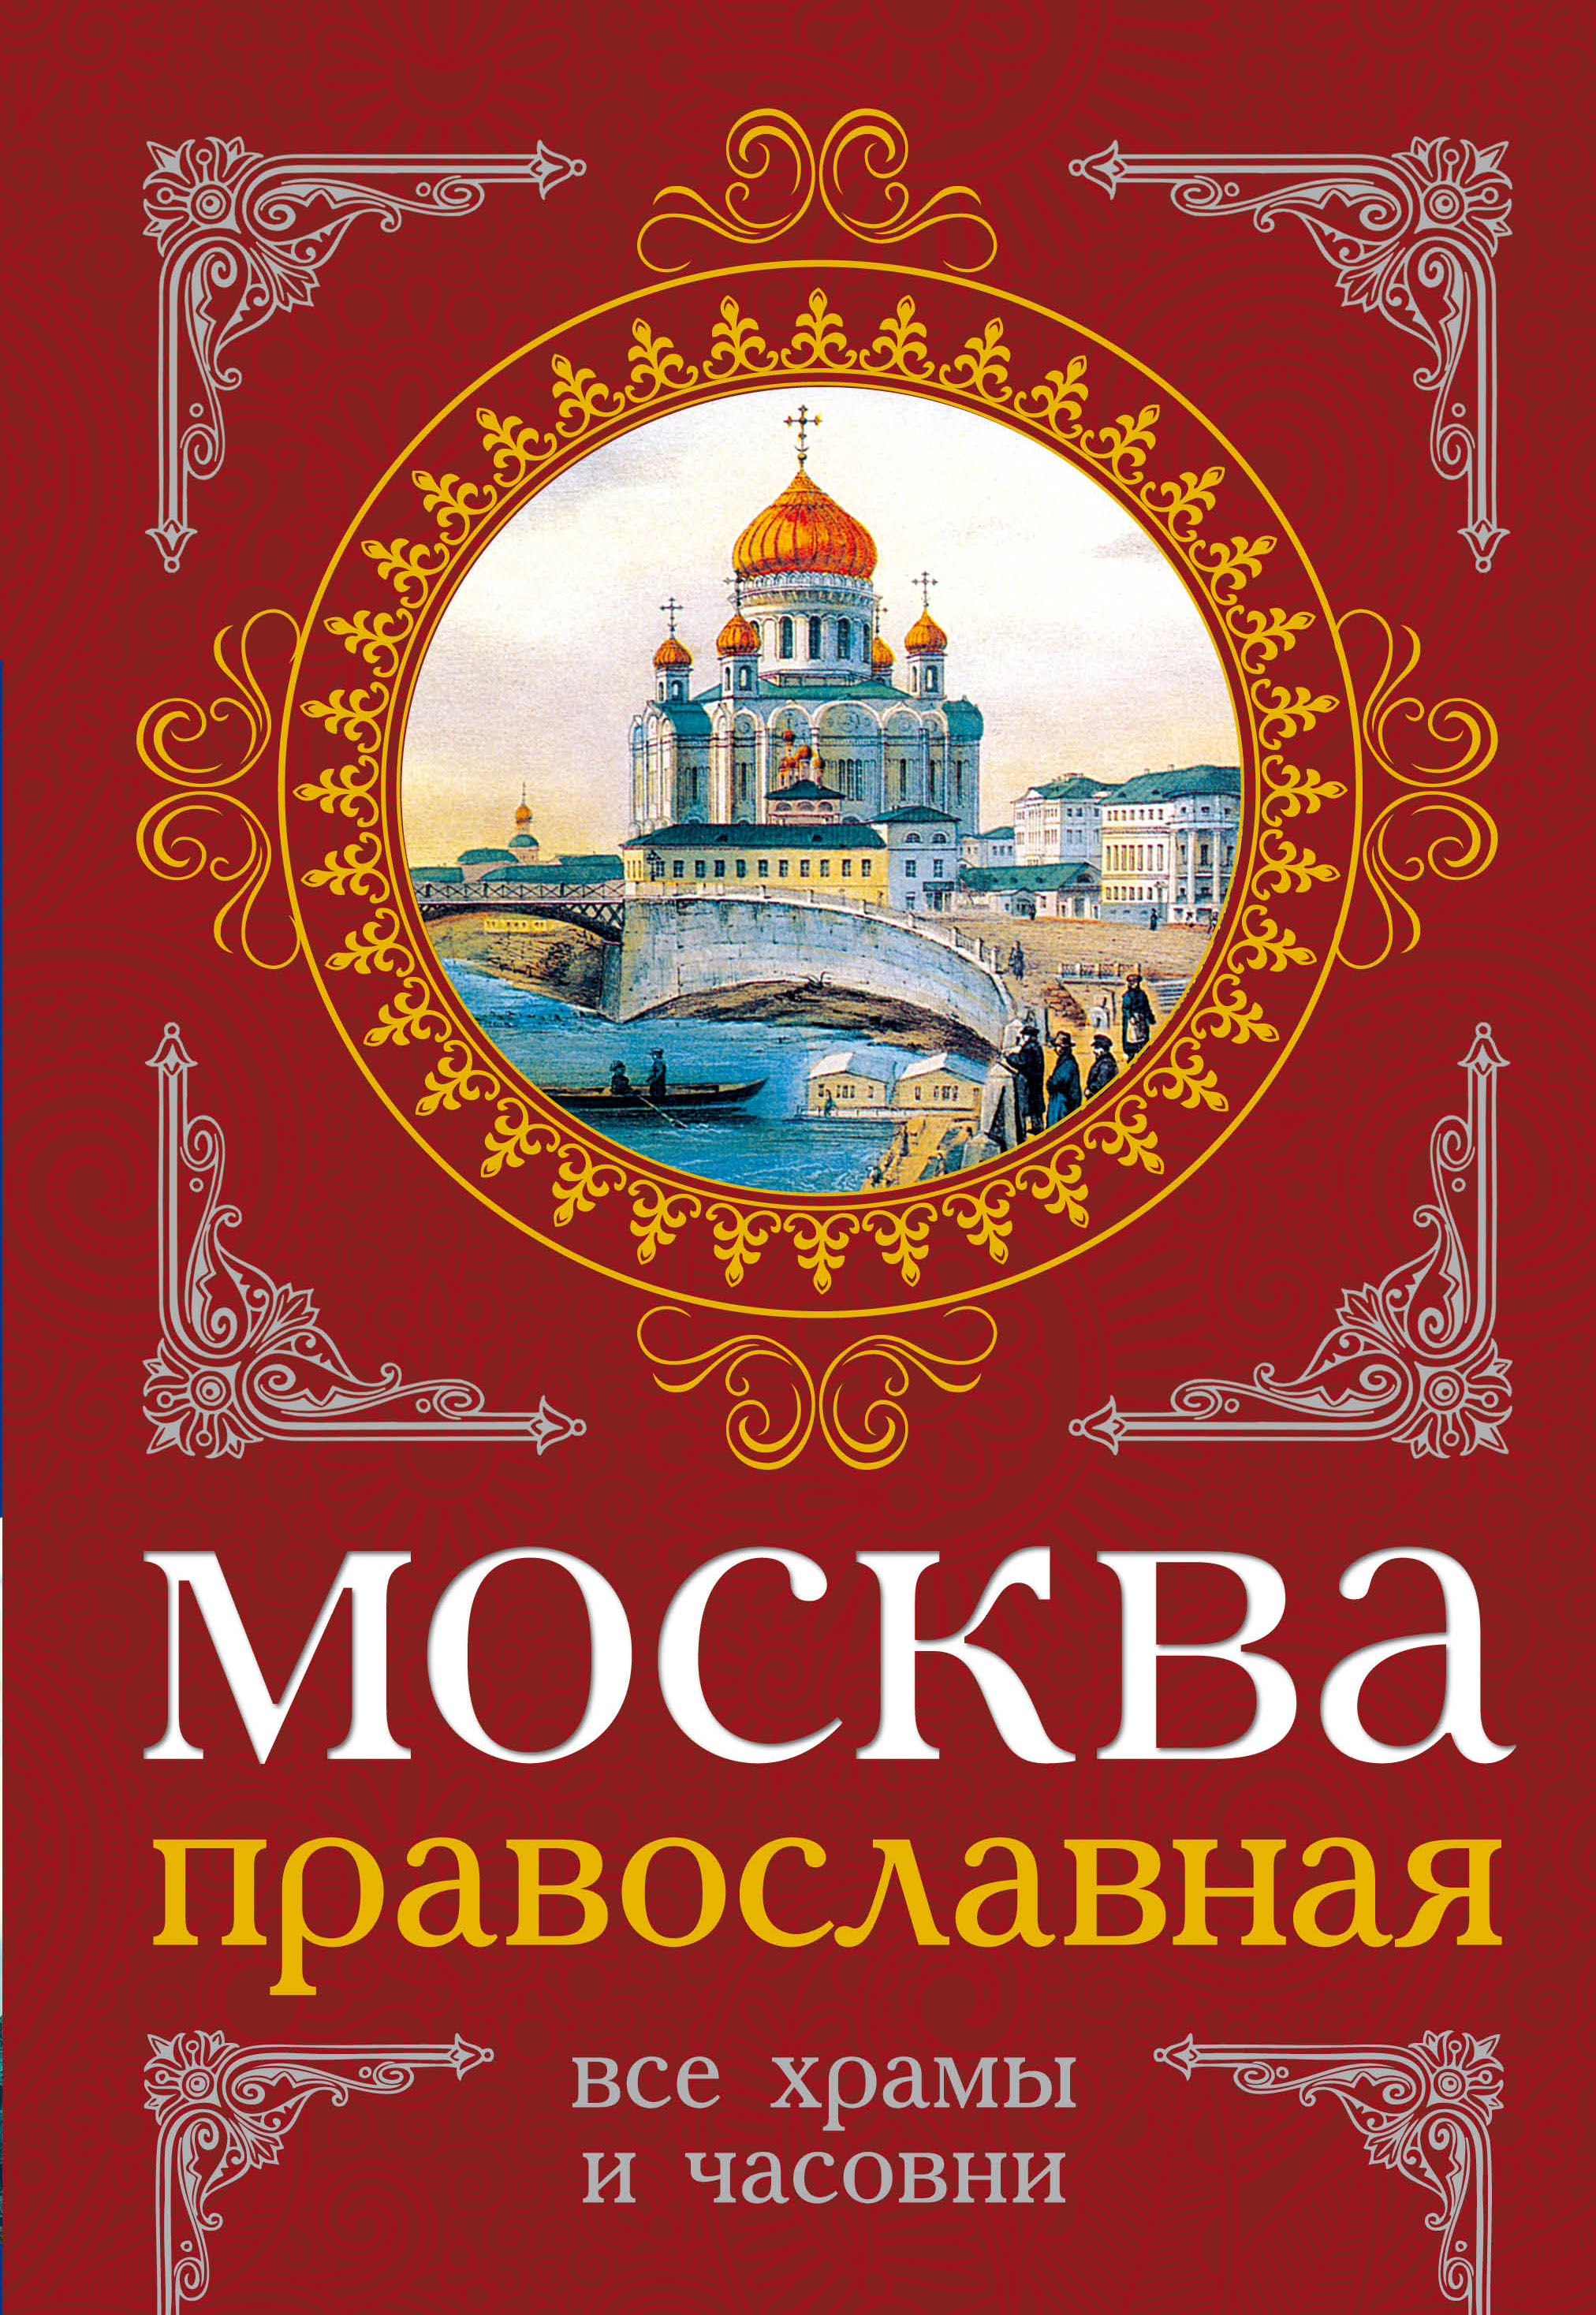 Православная книга москве